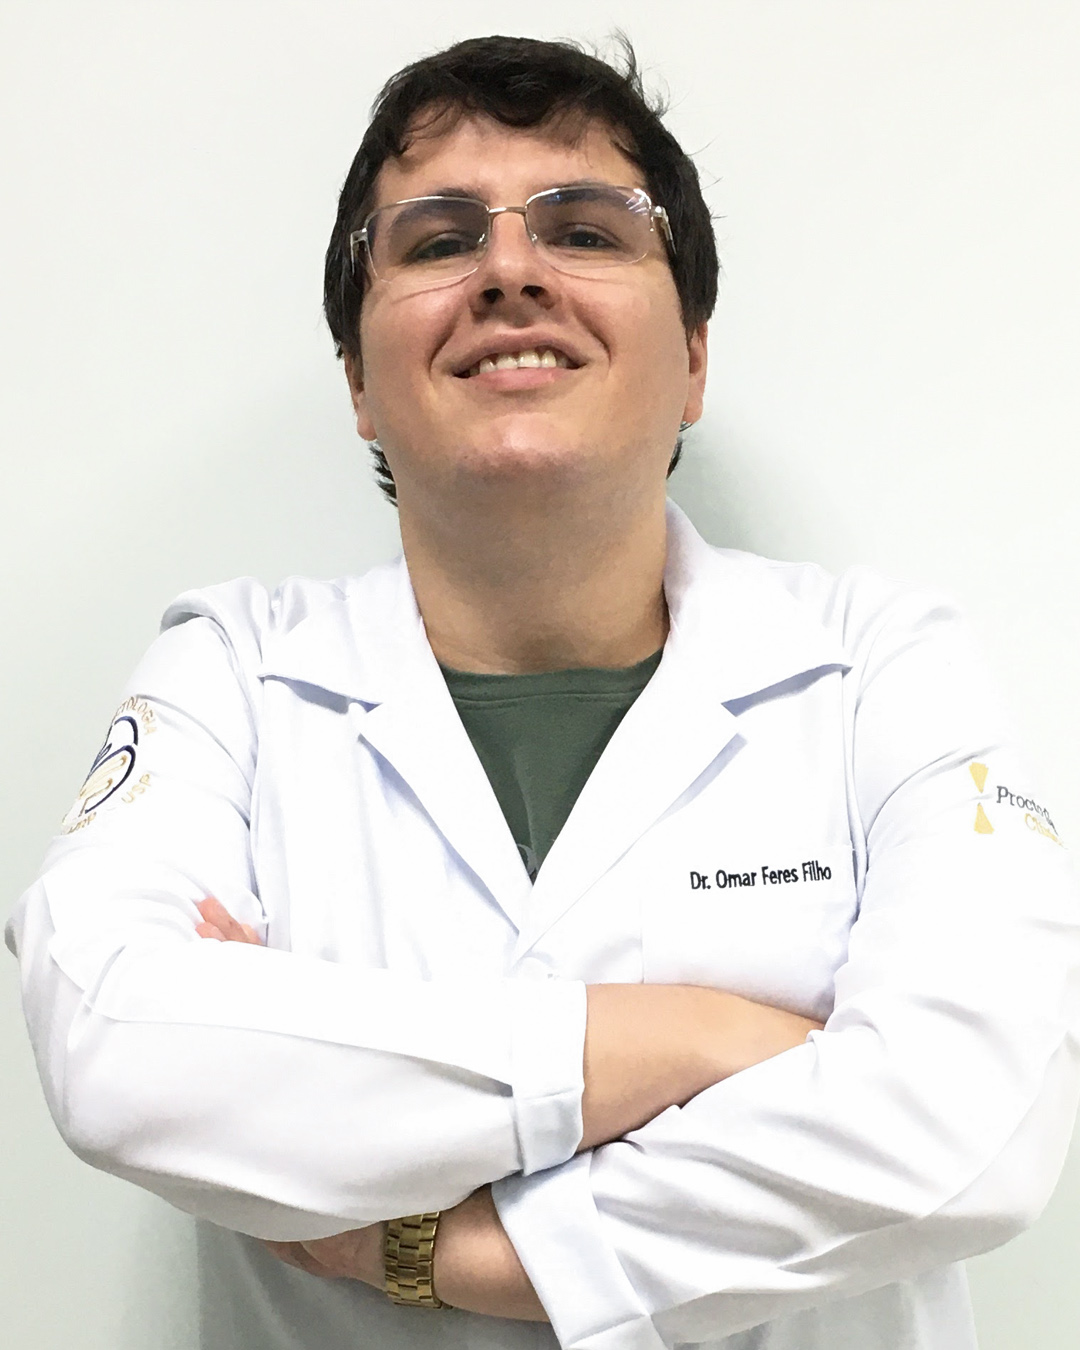 Dr. Omar Feres Filho